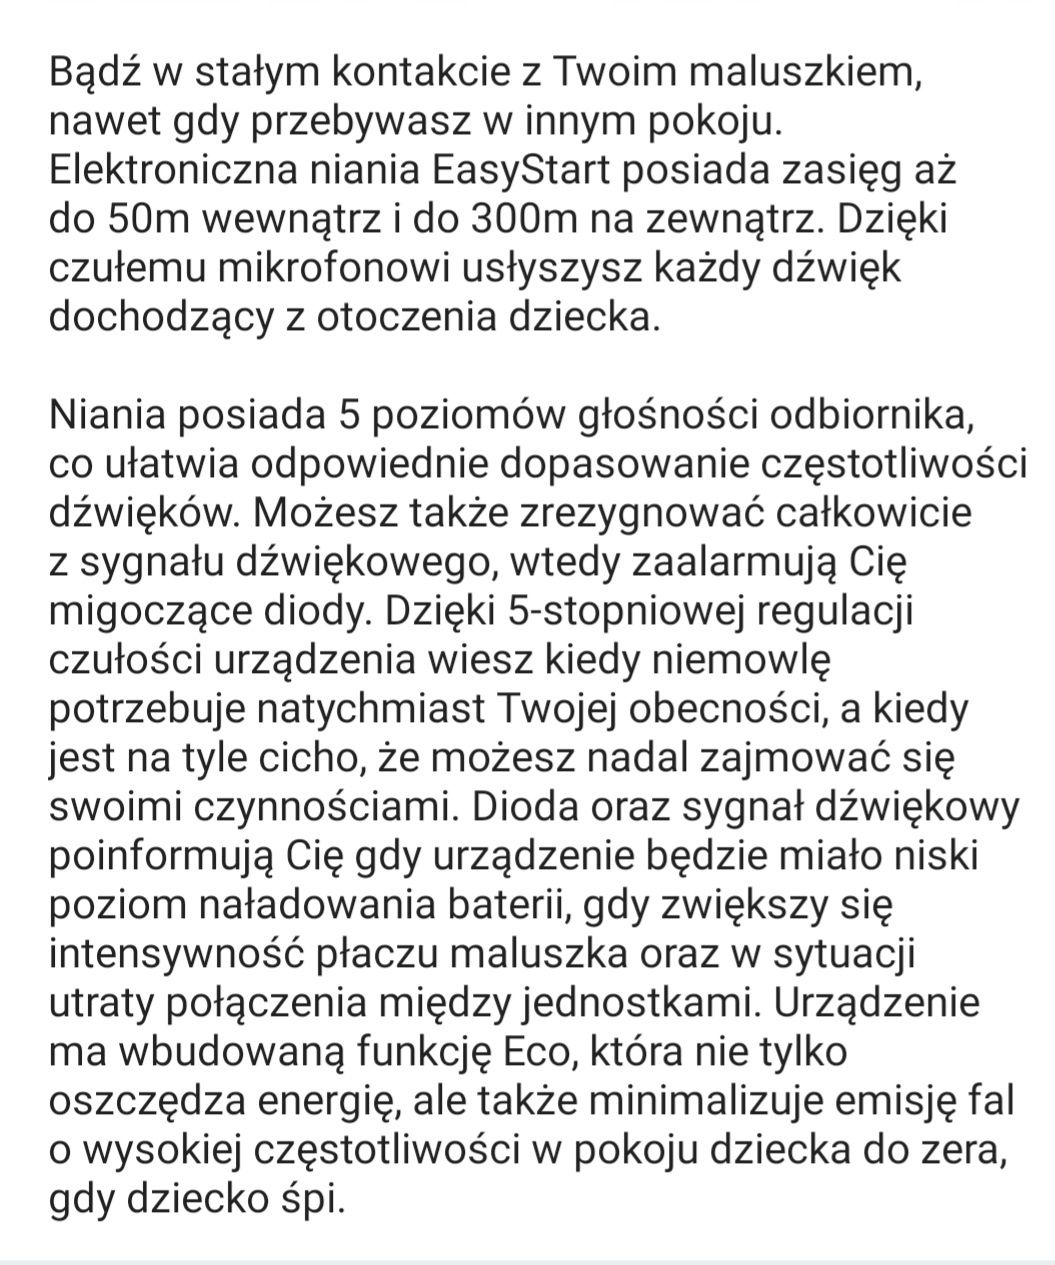 Niania elektroniczna Easy Stary Canpo babiesl